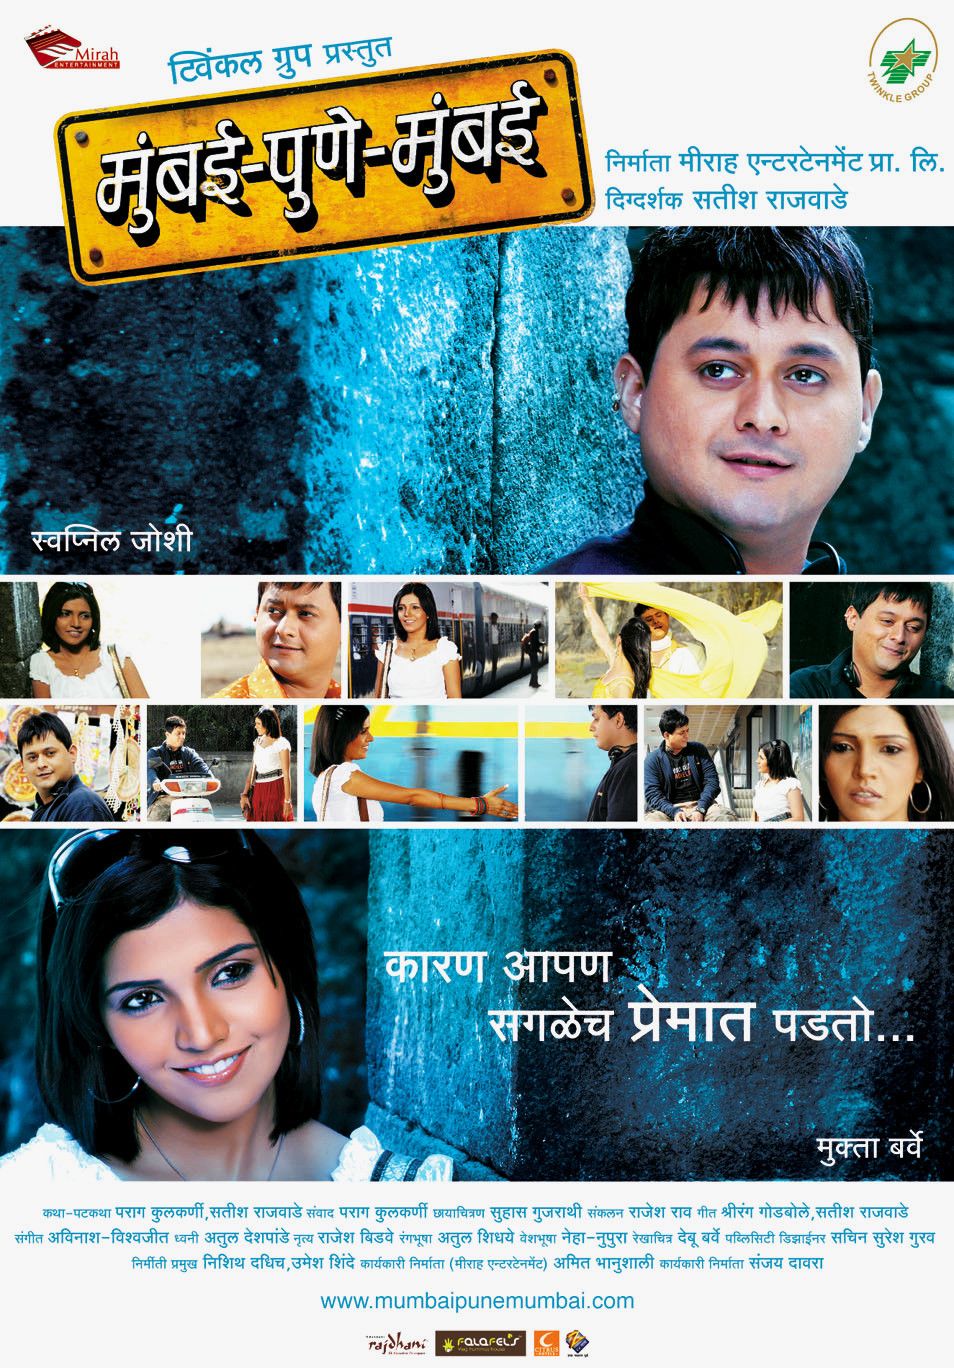 Extra Large Movie Poster Image for Mumbai-Pune-Mumbai (#4 of 12)